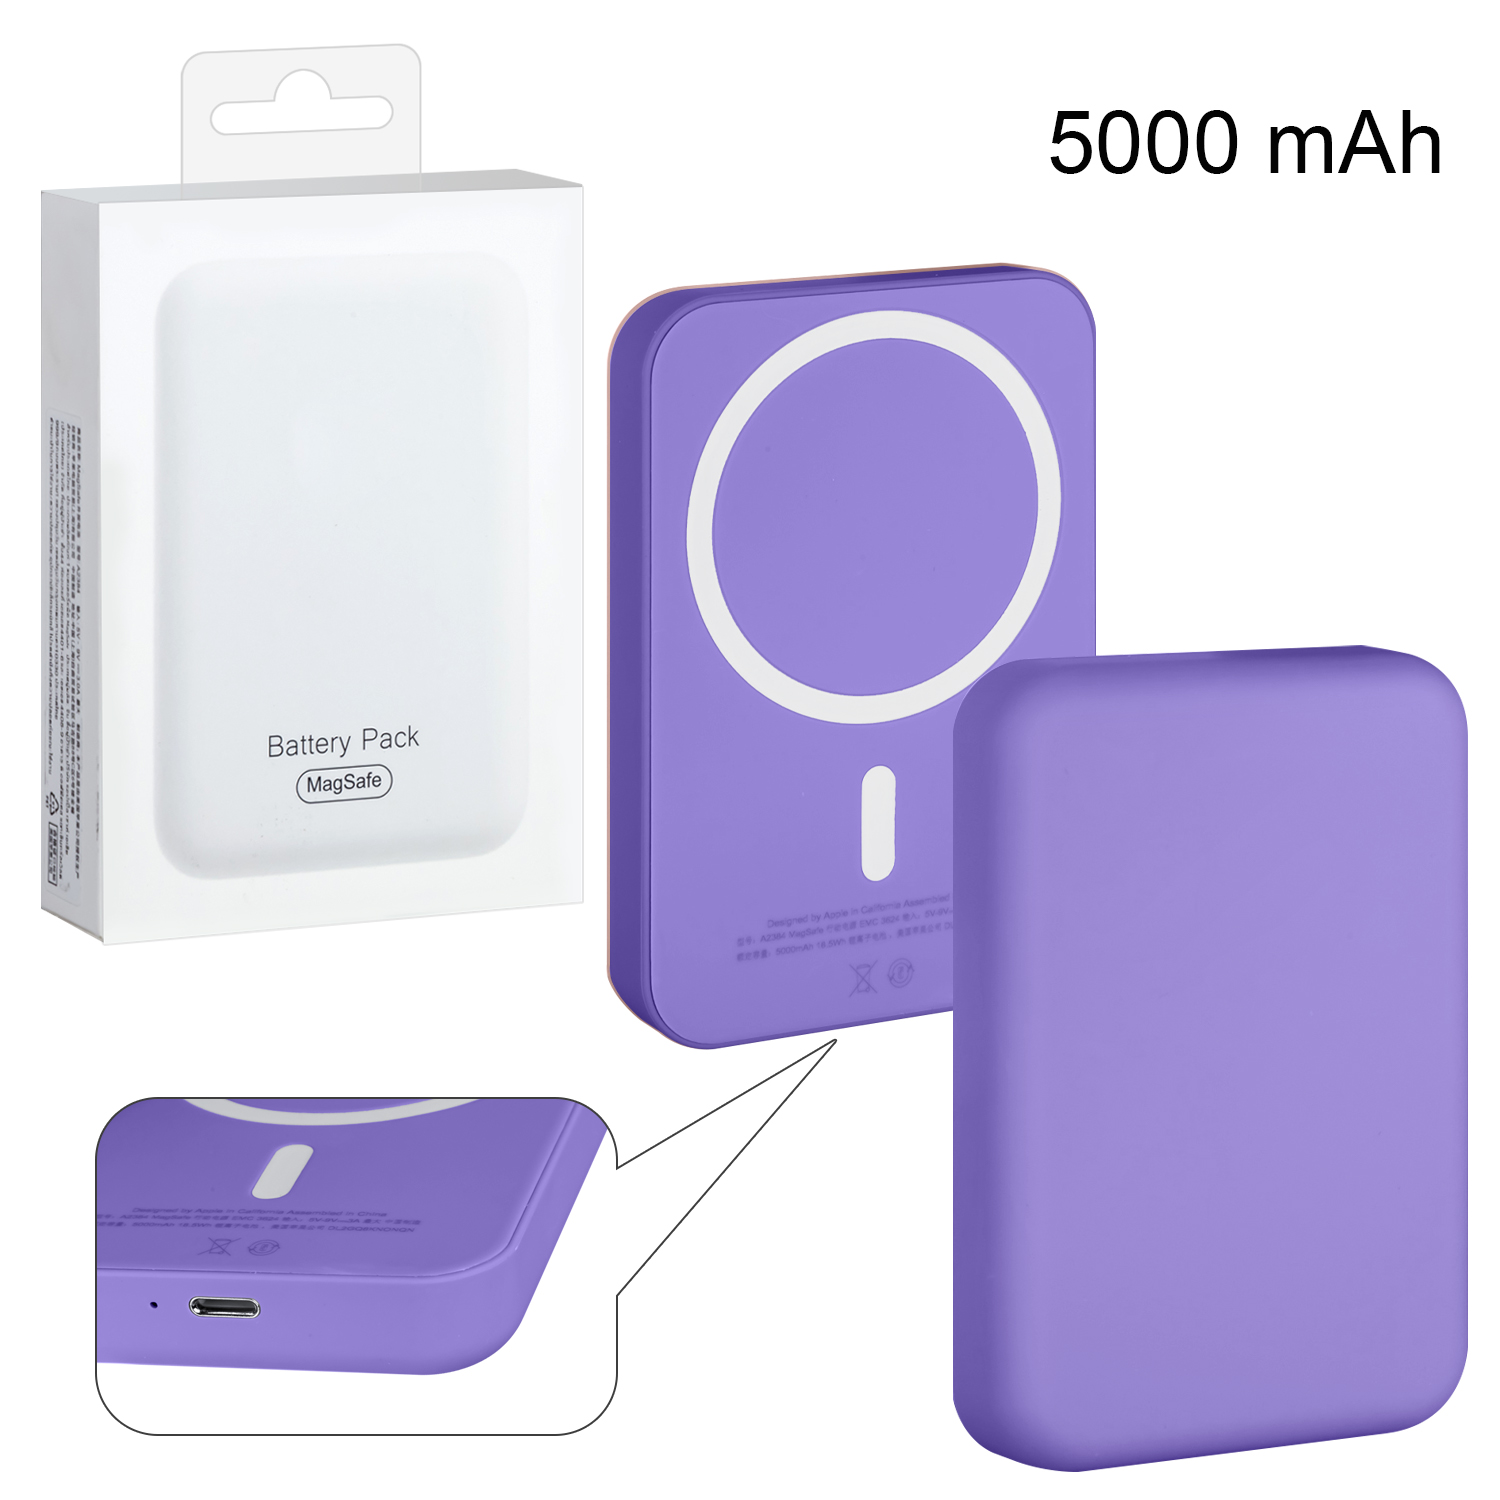 Беспроводное зарядное устройство Magsafe магнитное 5W 5000mAh (no logo) фиолетовый